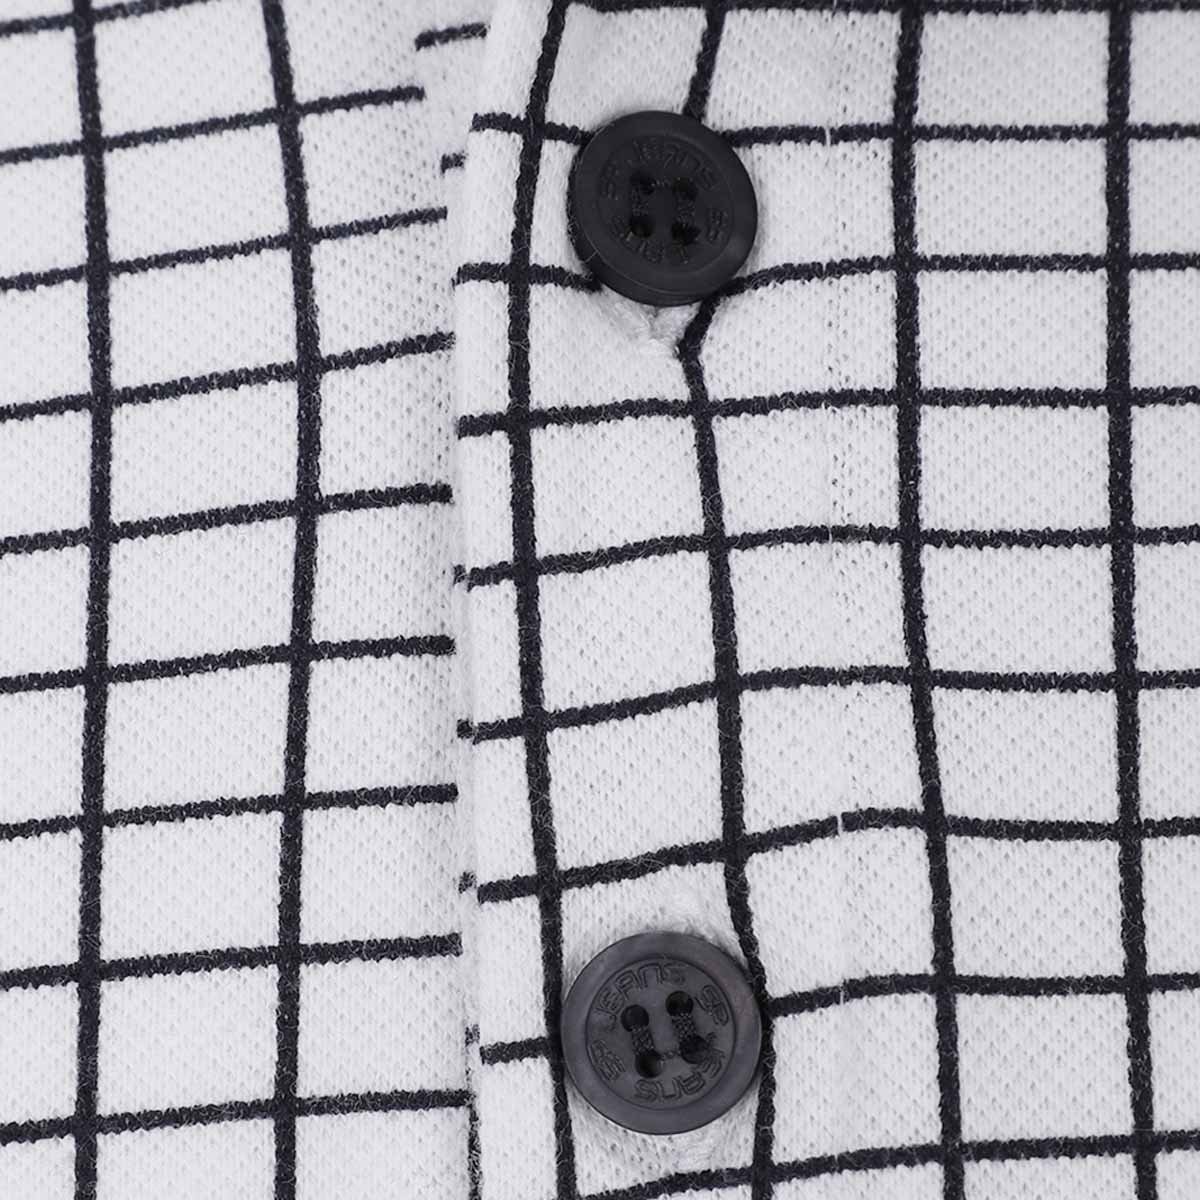 Checkered Polo Shirt